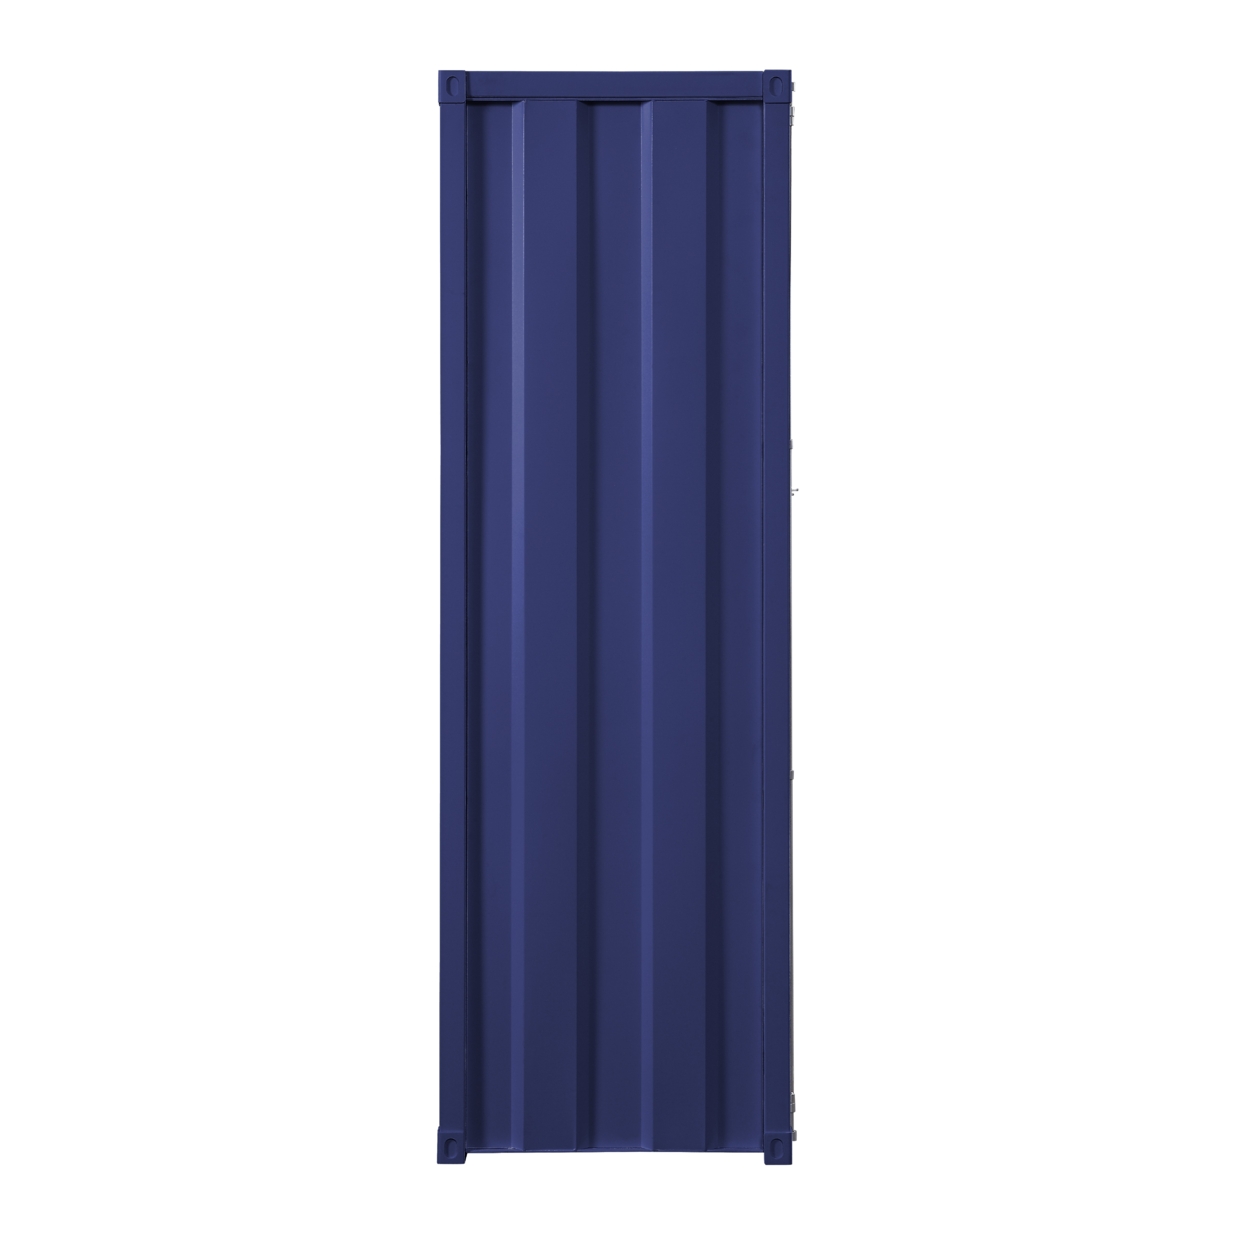 Industrial Style Metal Wardrobe With Recessed Door Front, Blue- Saltoro Sherpi